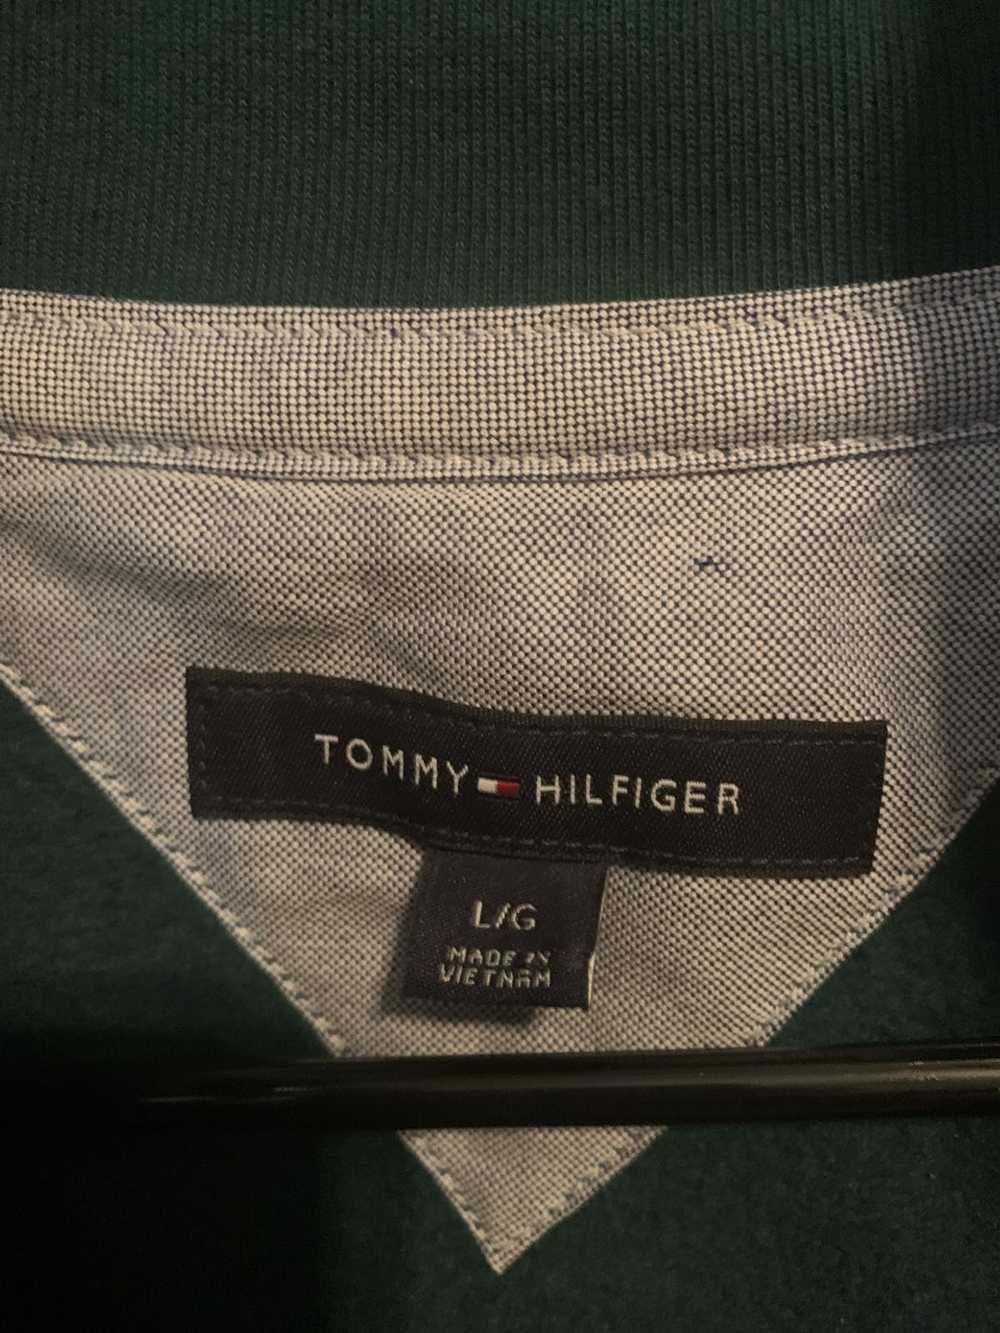 Tommy Hilfiger Tommy Hilfiger Quarter-Zip - image 2